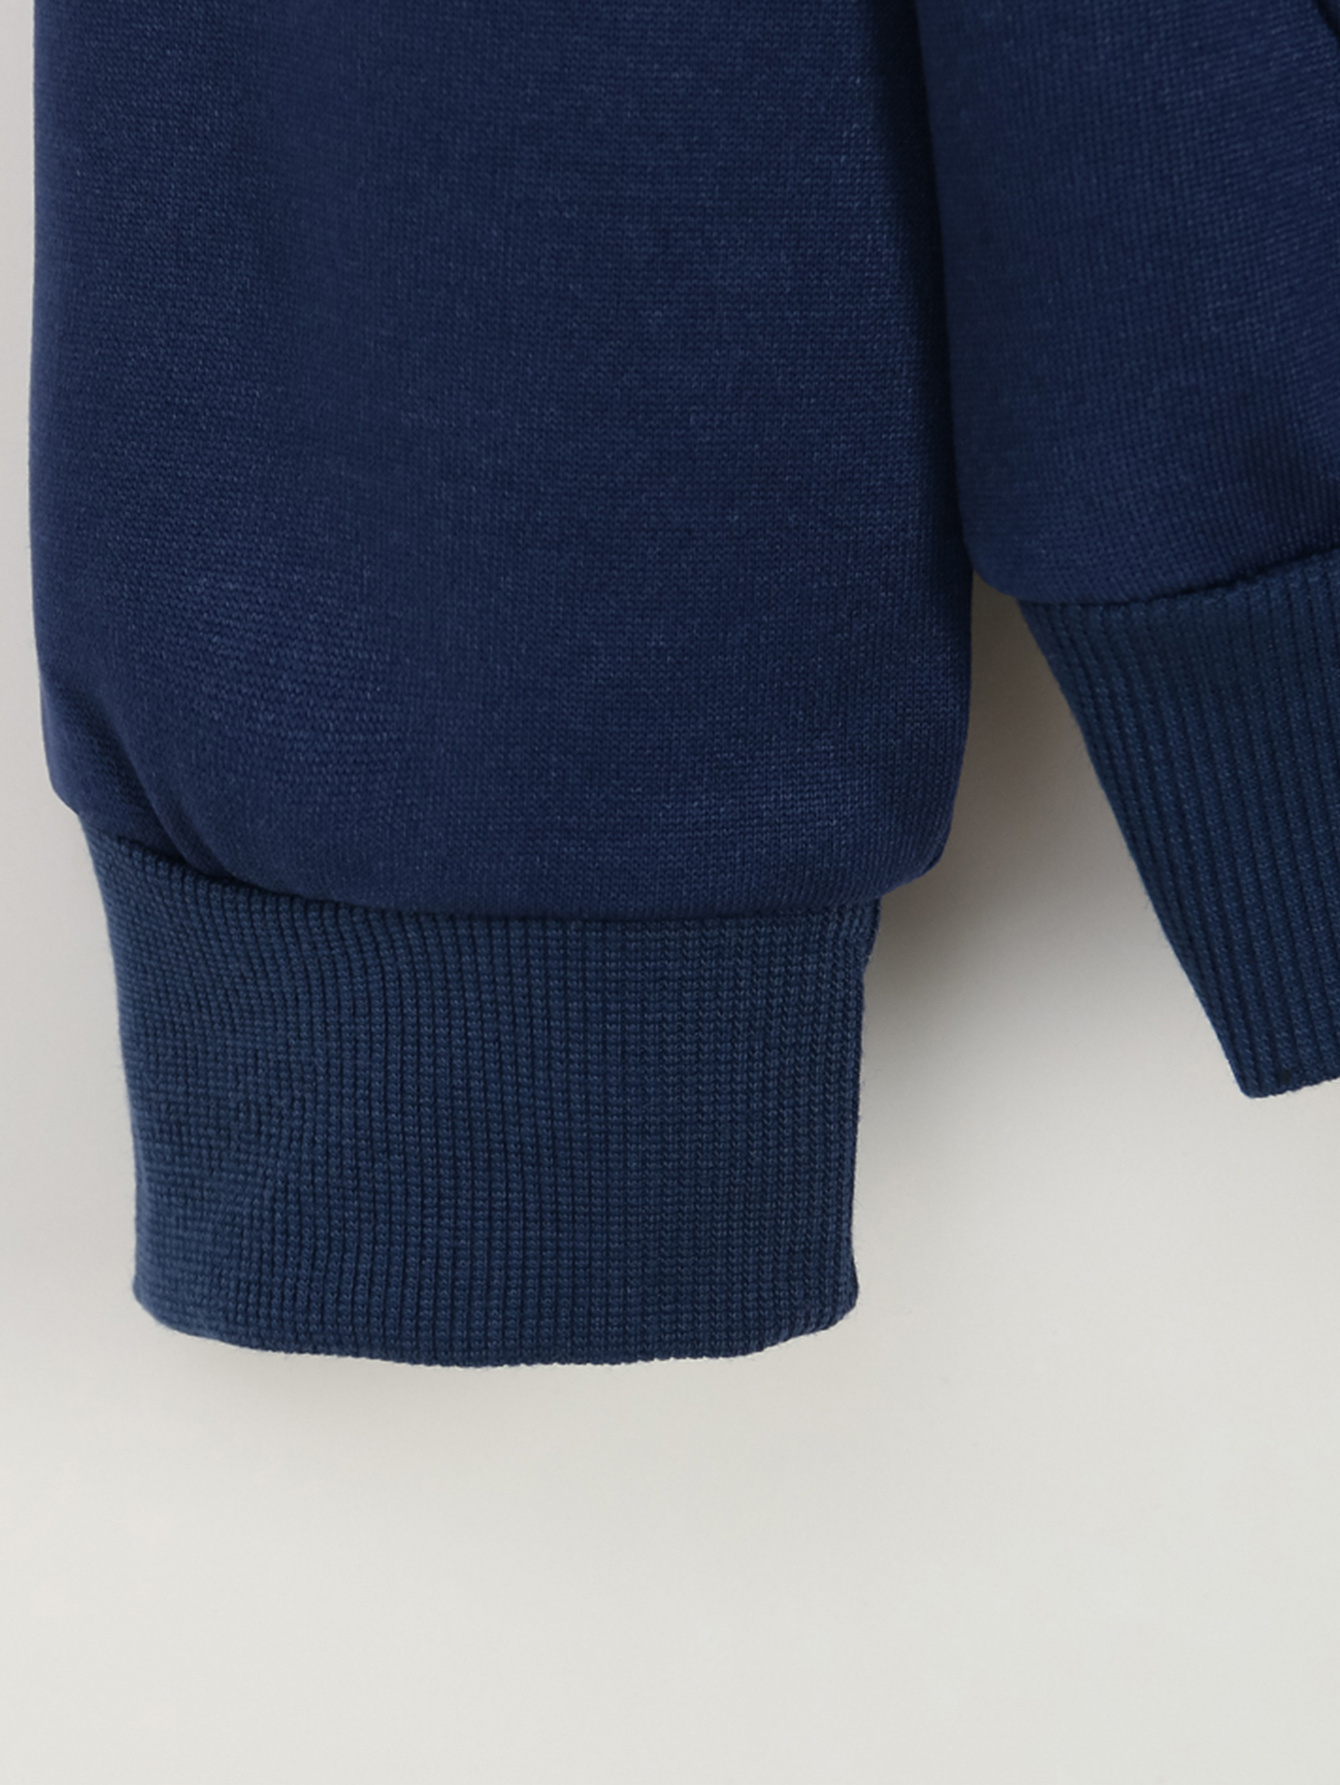 FILA Women's Sweater Size XL Long Sleeve Hoodie w/Pocket Blue